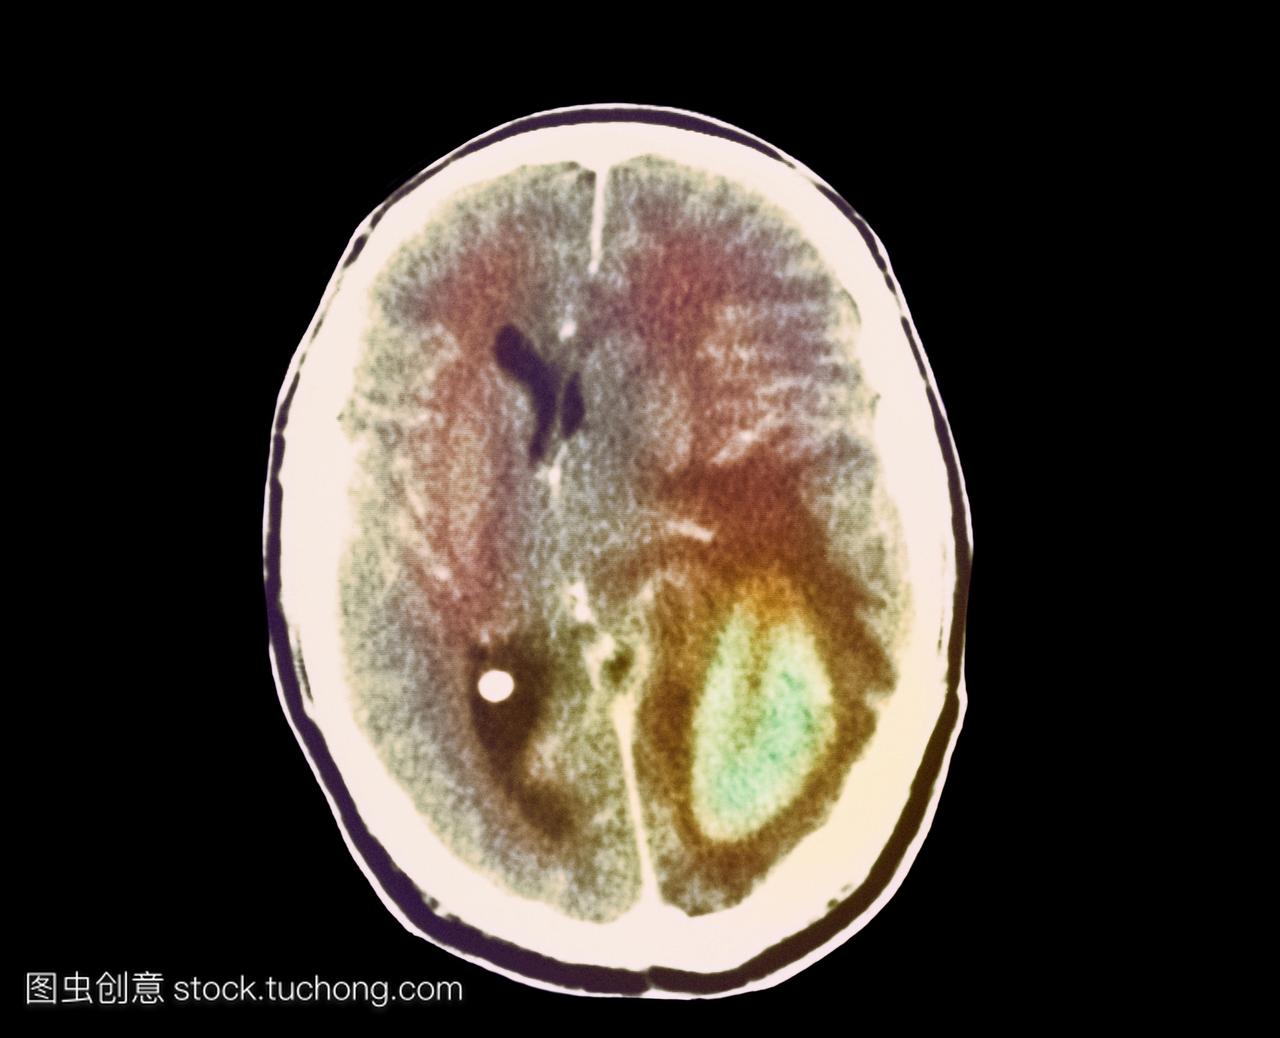 脑癌的增长。图片2的2的计算机断层扫描CT扫